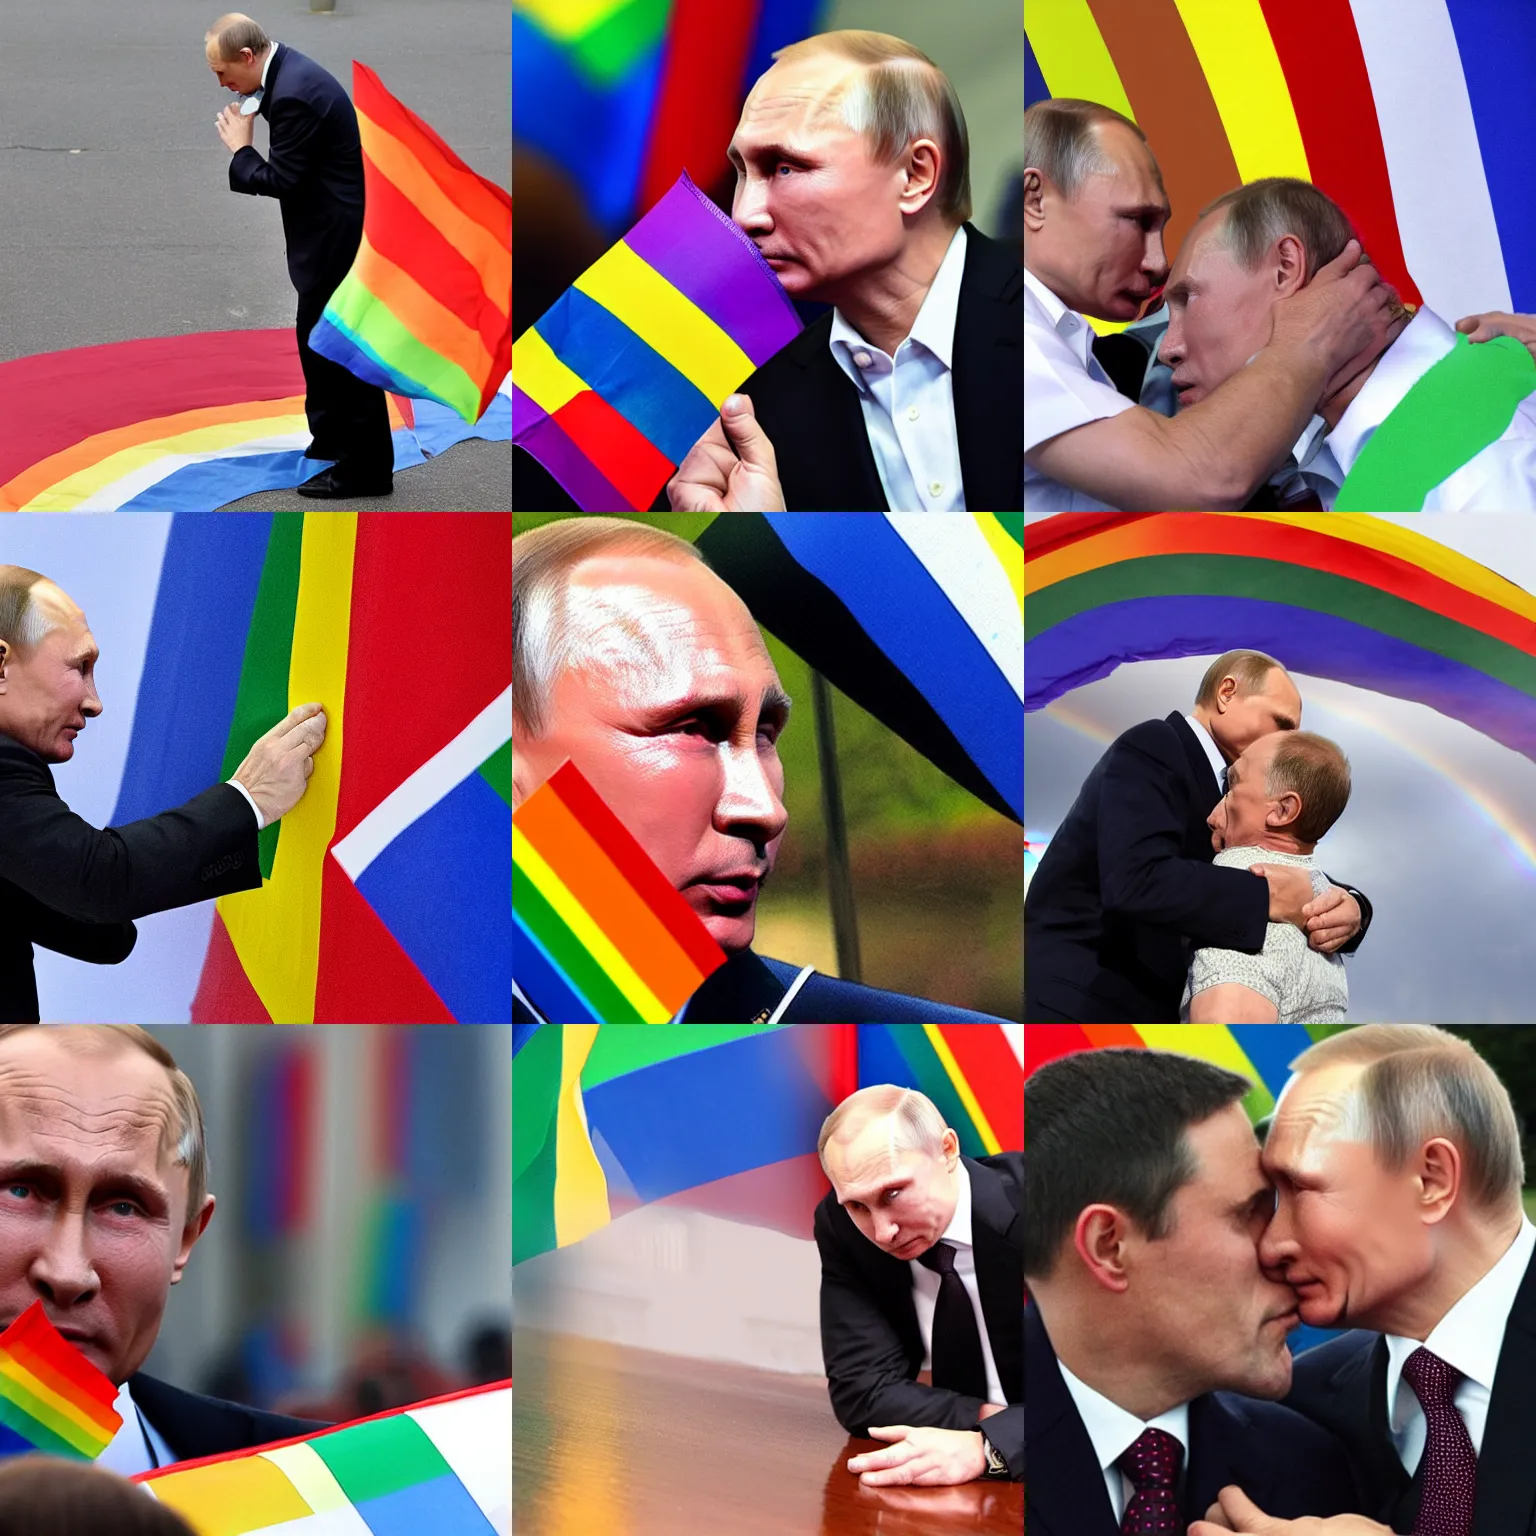 Prompt: Vladimir Putin kissing a rainbow flag